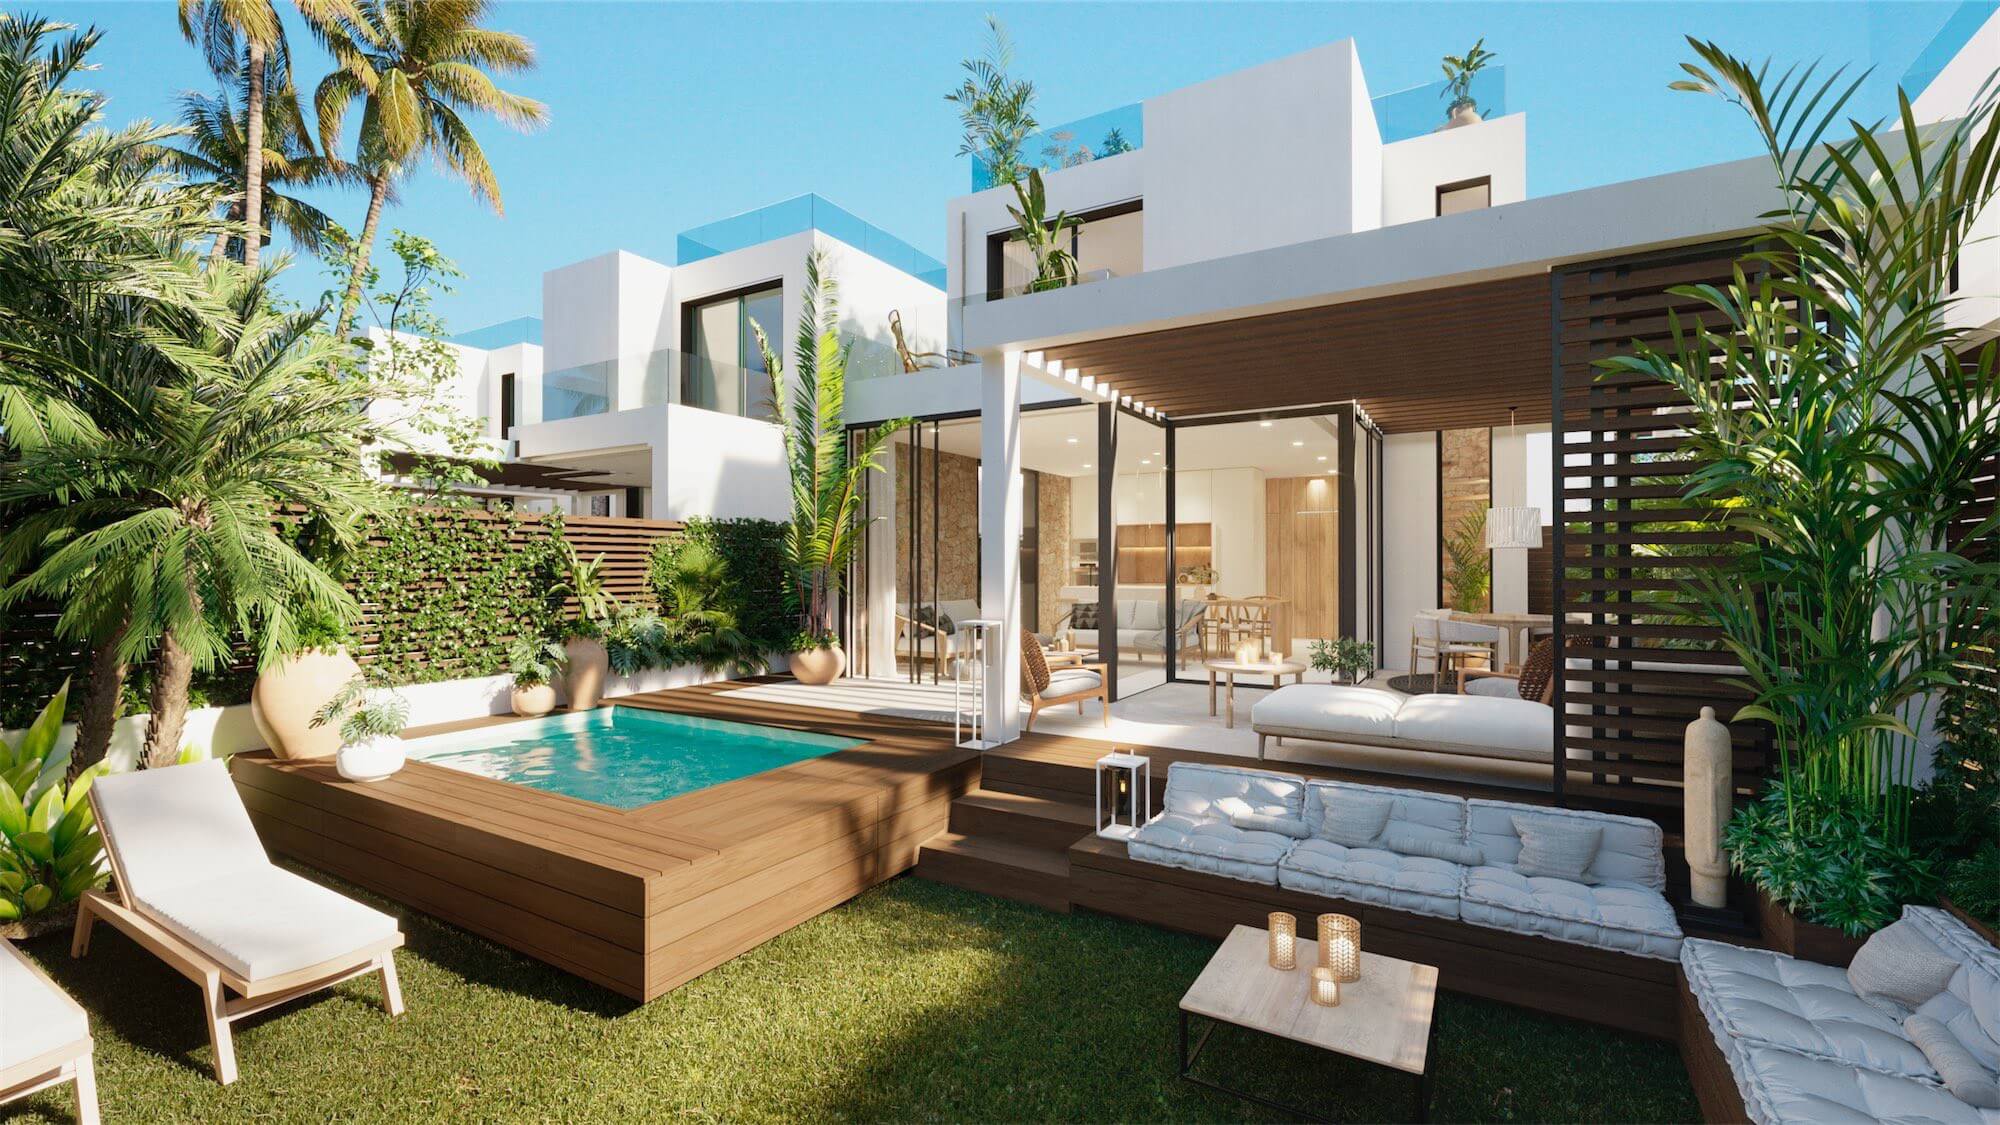 voor de helft Aankoop Ziek persoon Uniek: Luxe nieuwbouw Ibiza villa's op loopafstand van Cala Tarida strand!